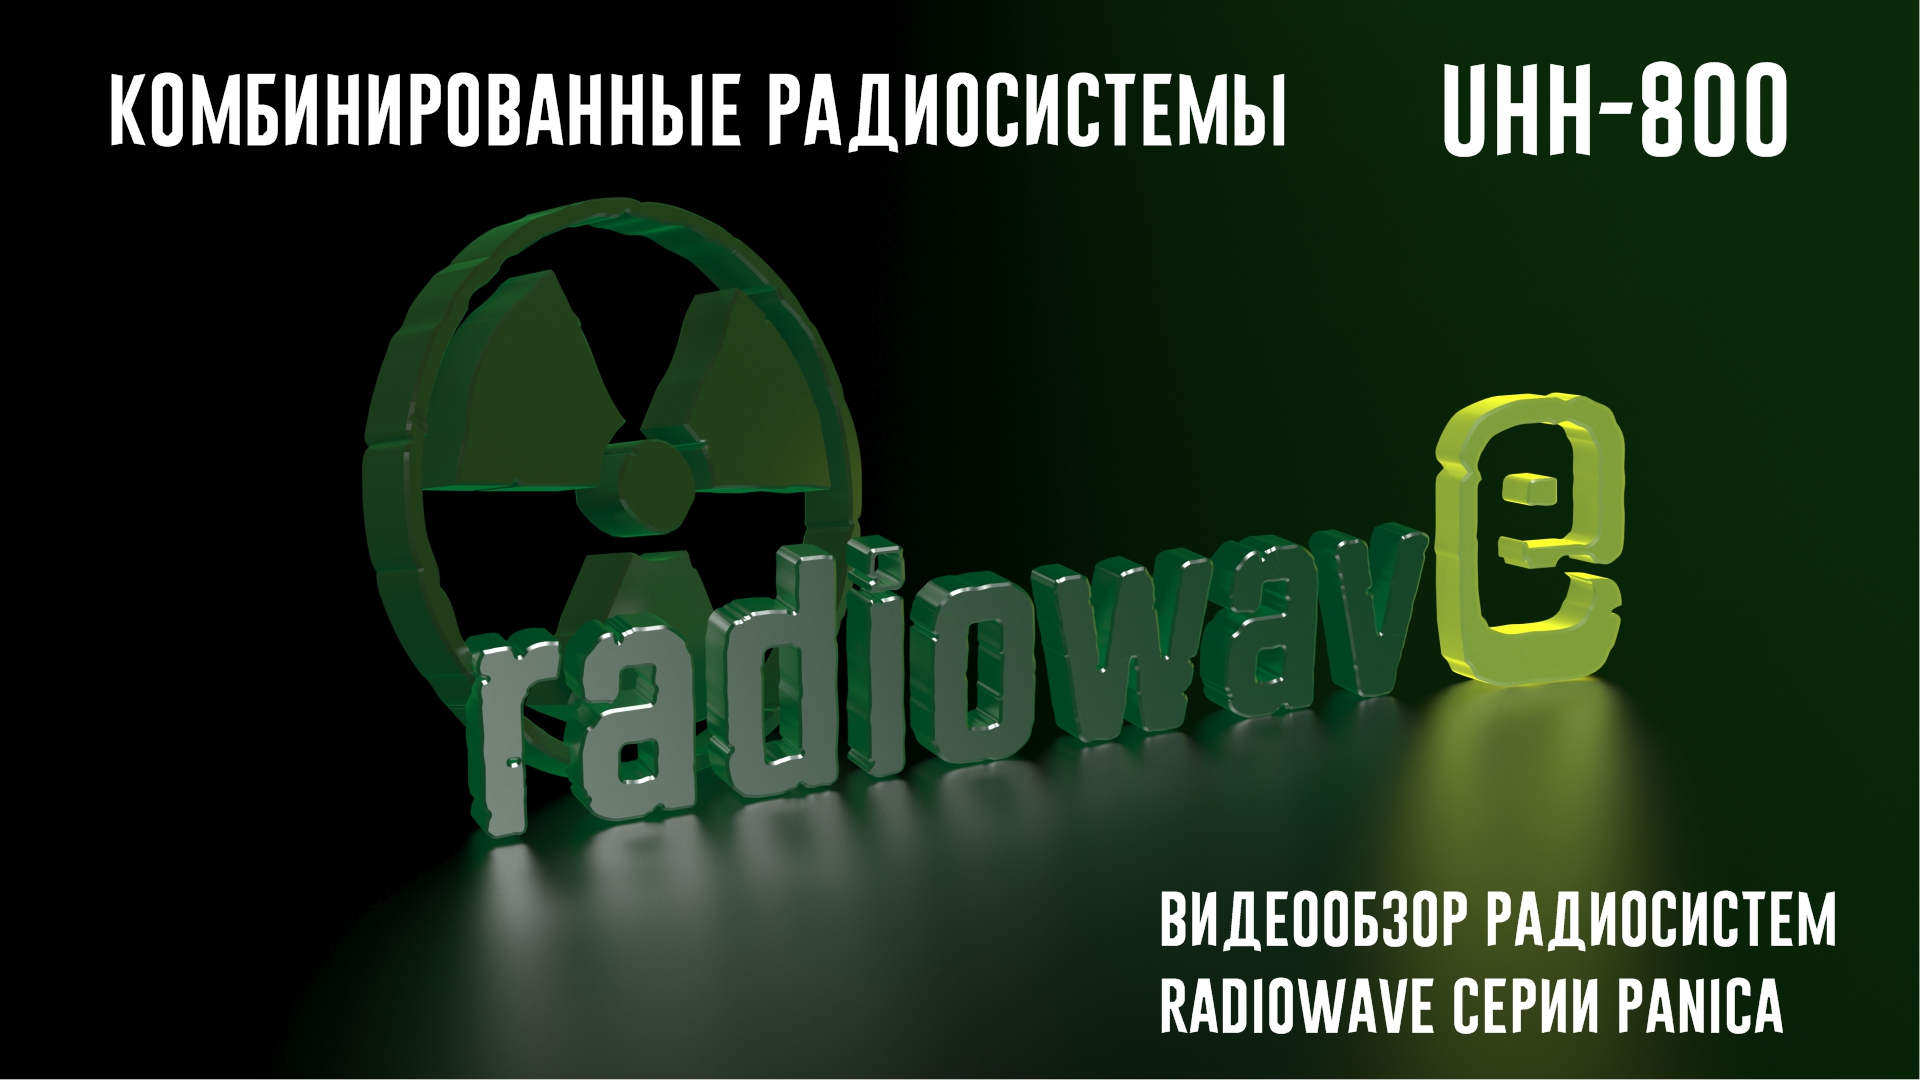 Radiowave UHH-800 Комбинированные Радиосистемы